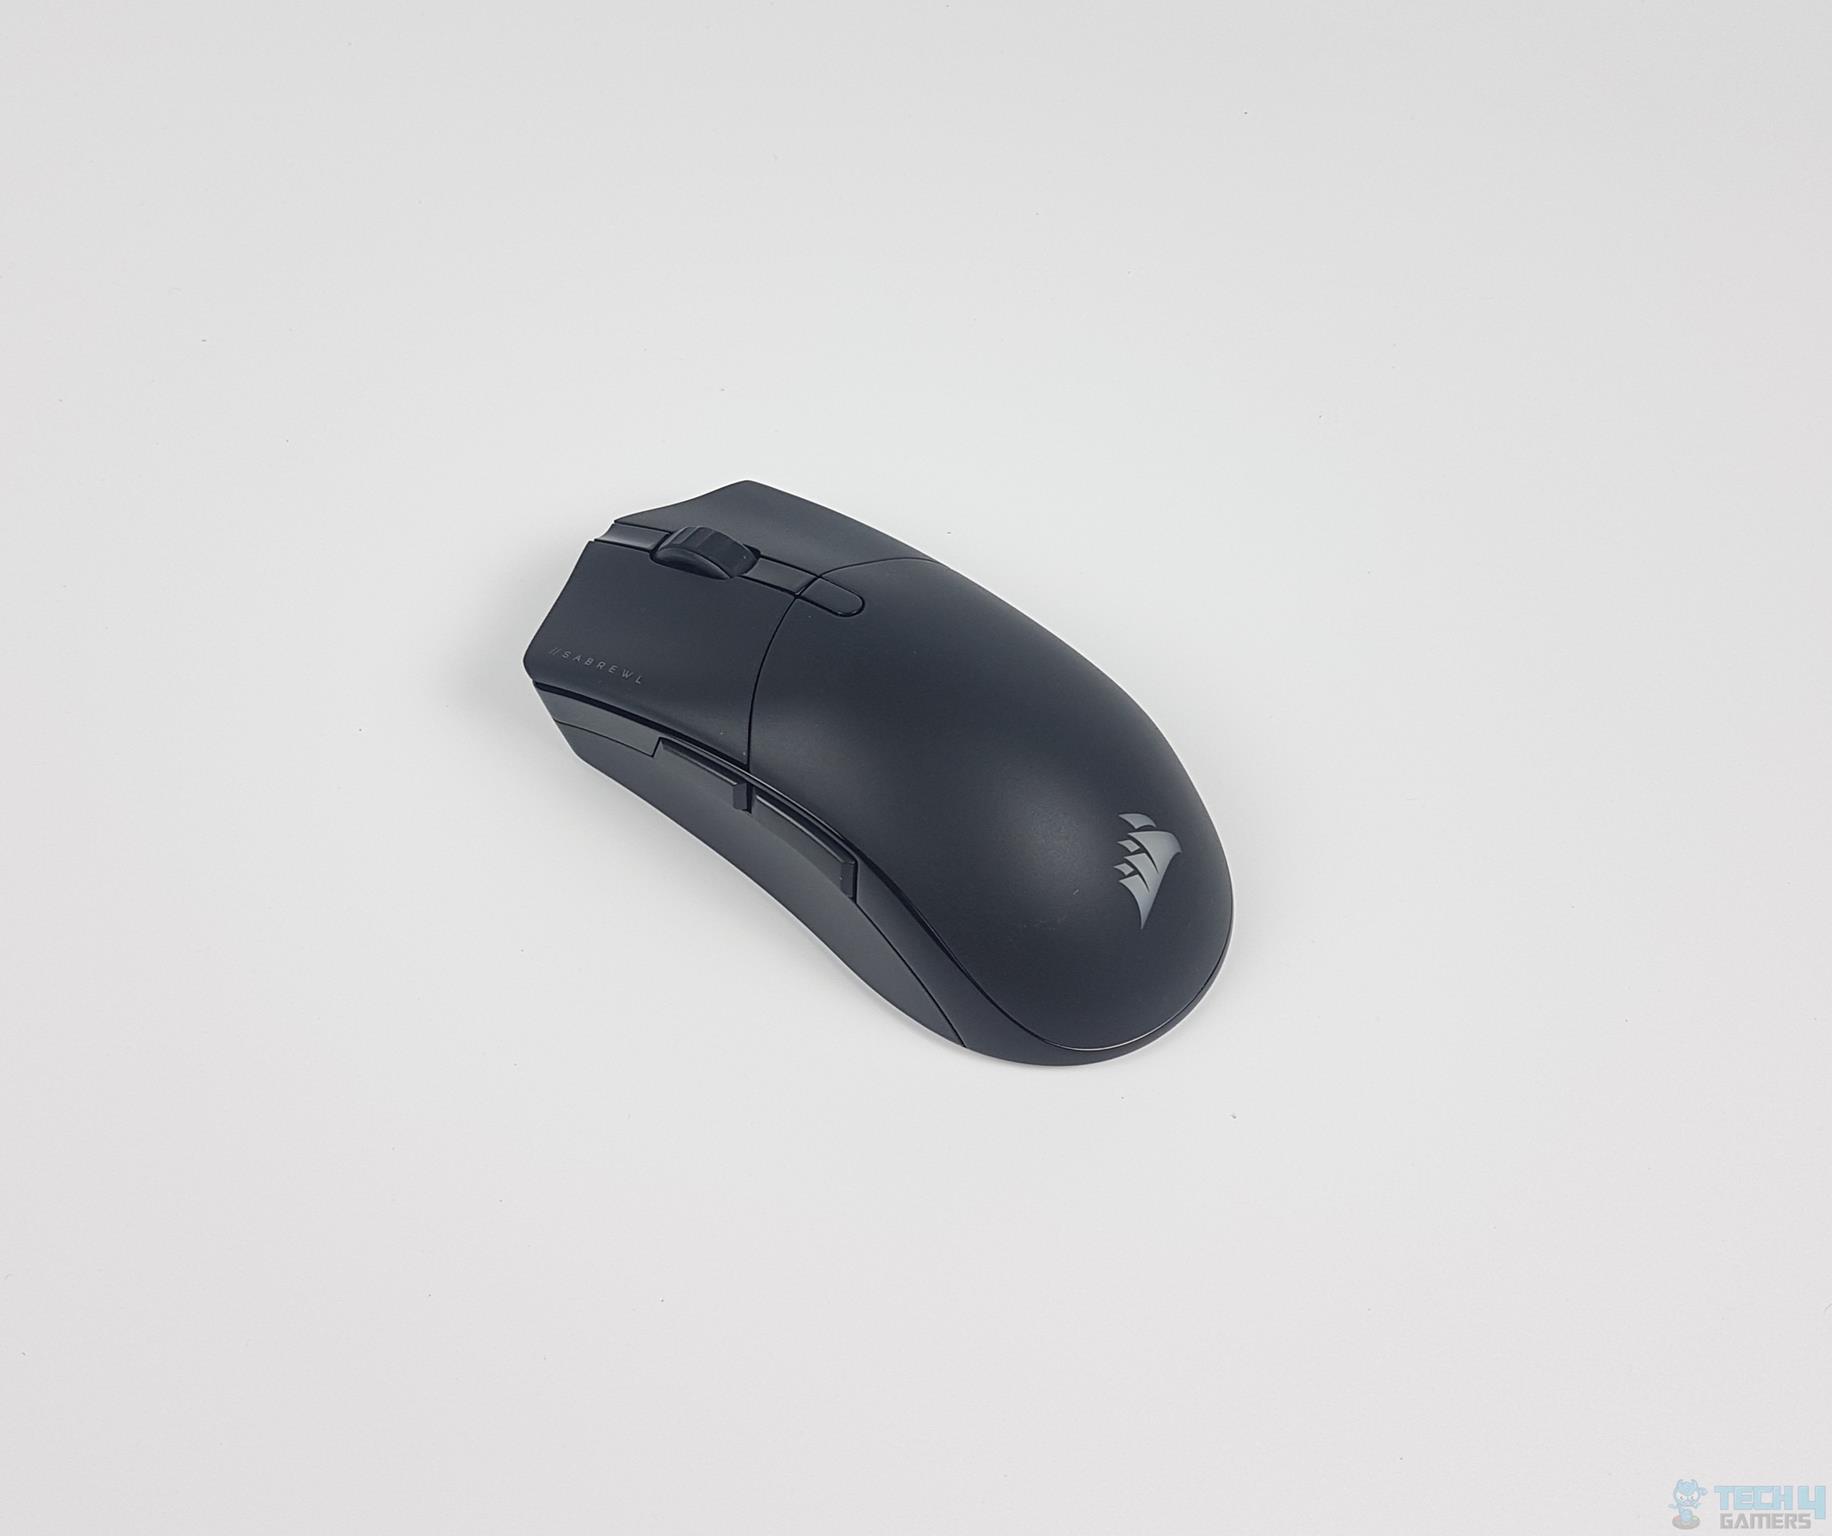 tårn Stille og rolig maske CORSAIR Sabre RGB Pro Wireless Gaming Mouse Review